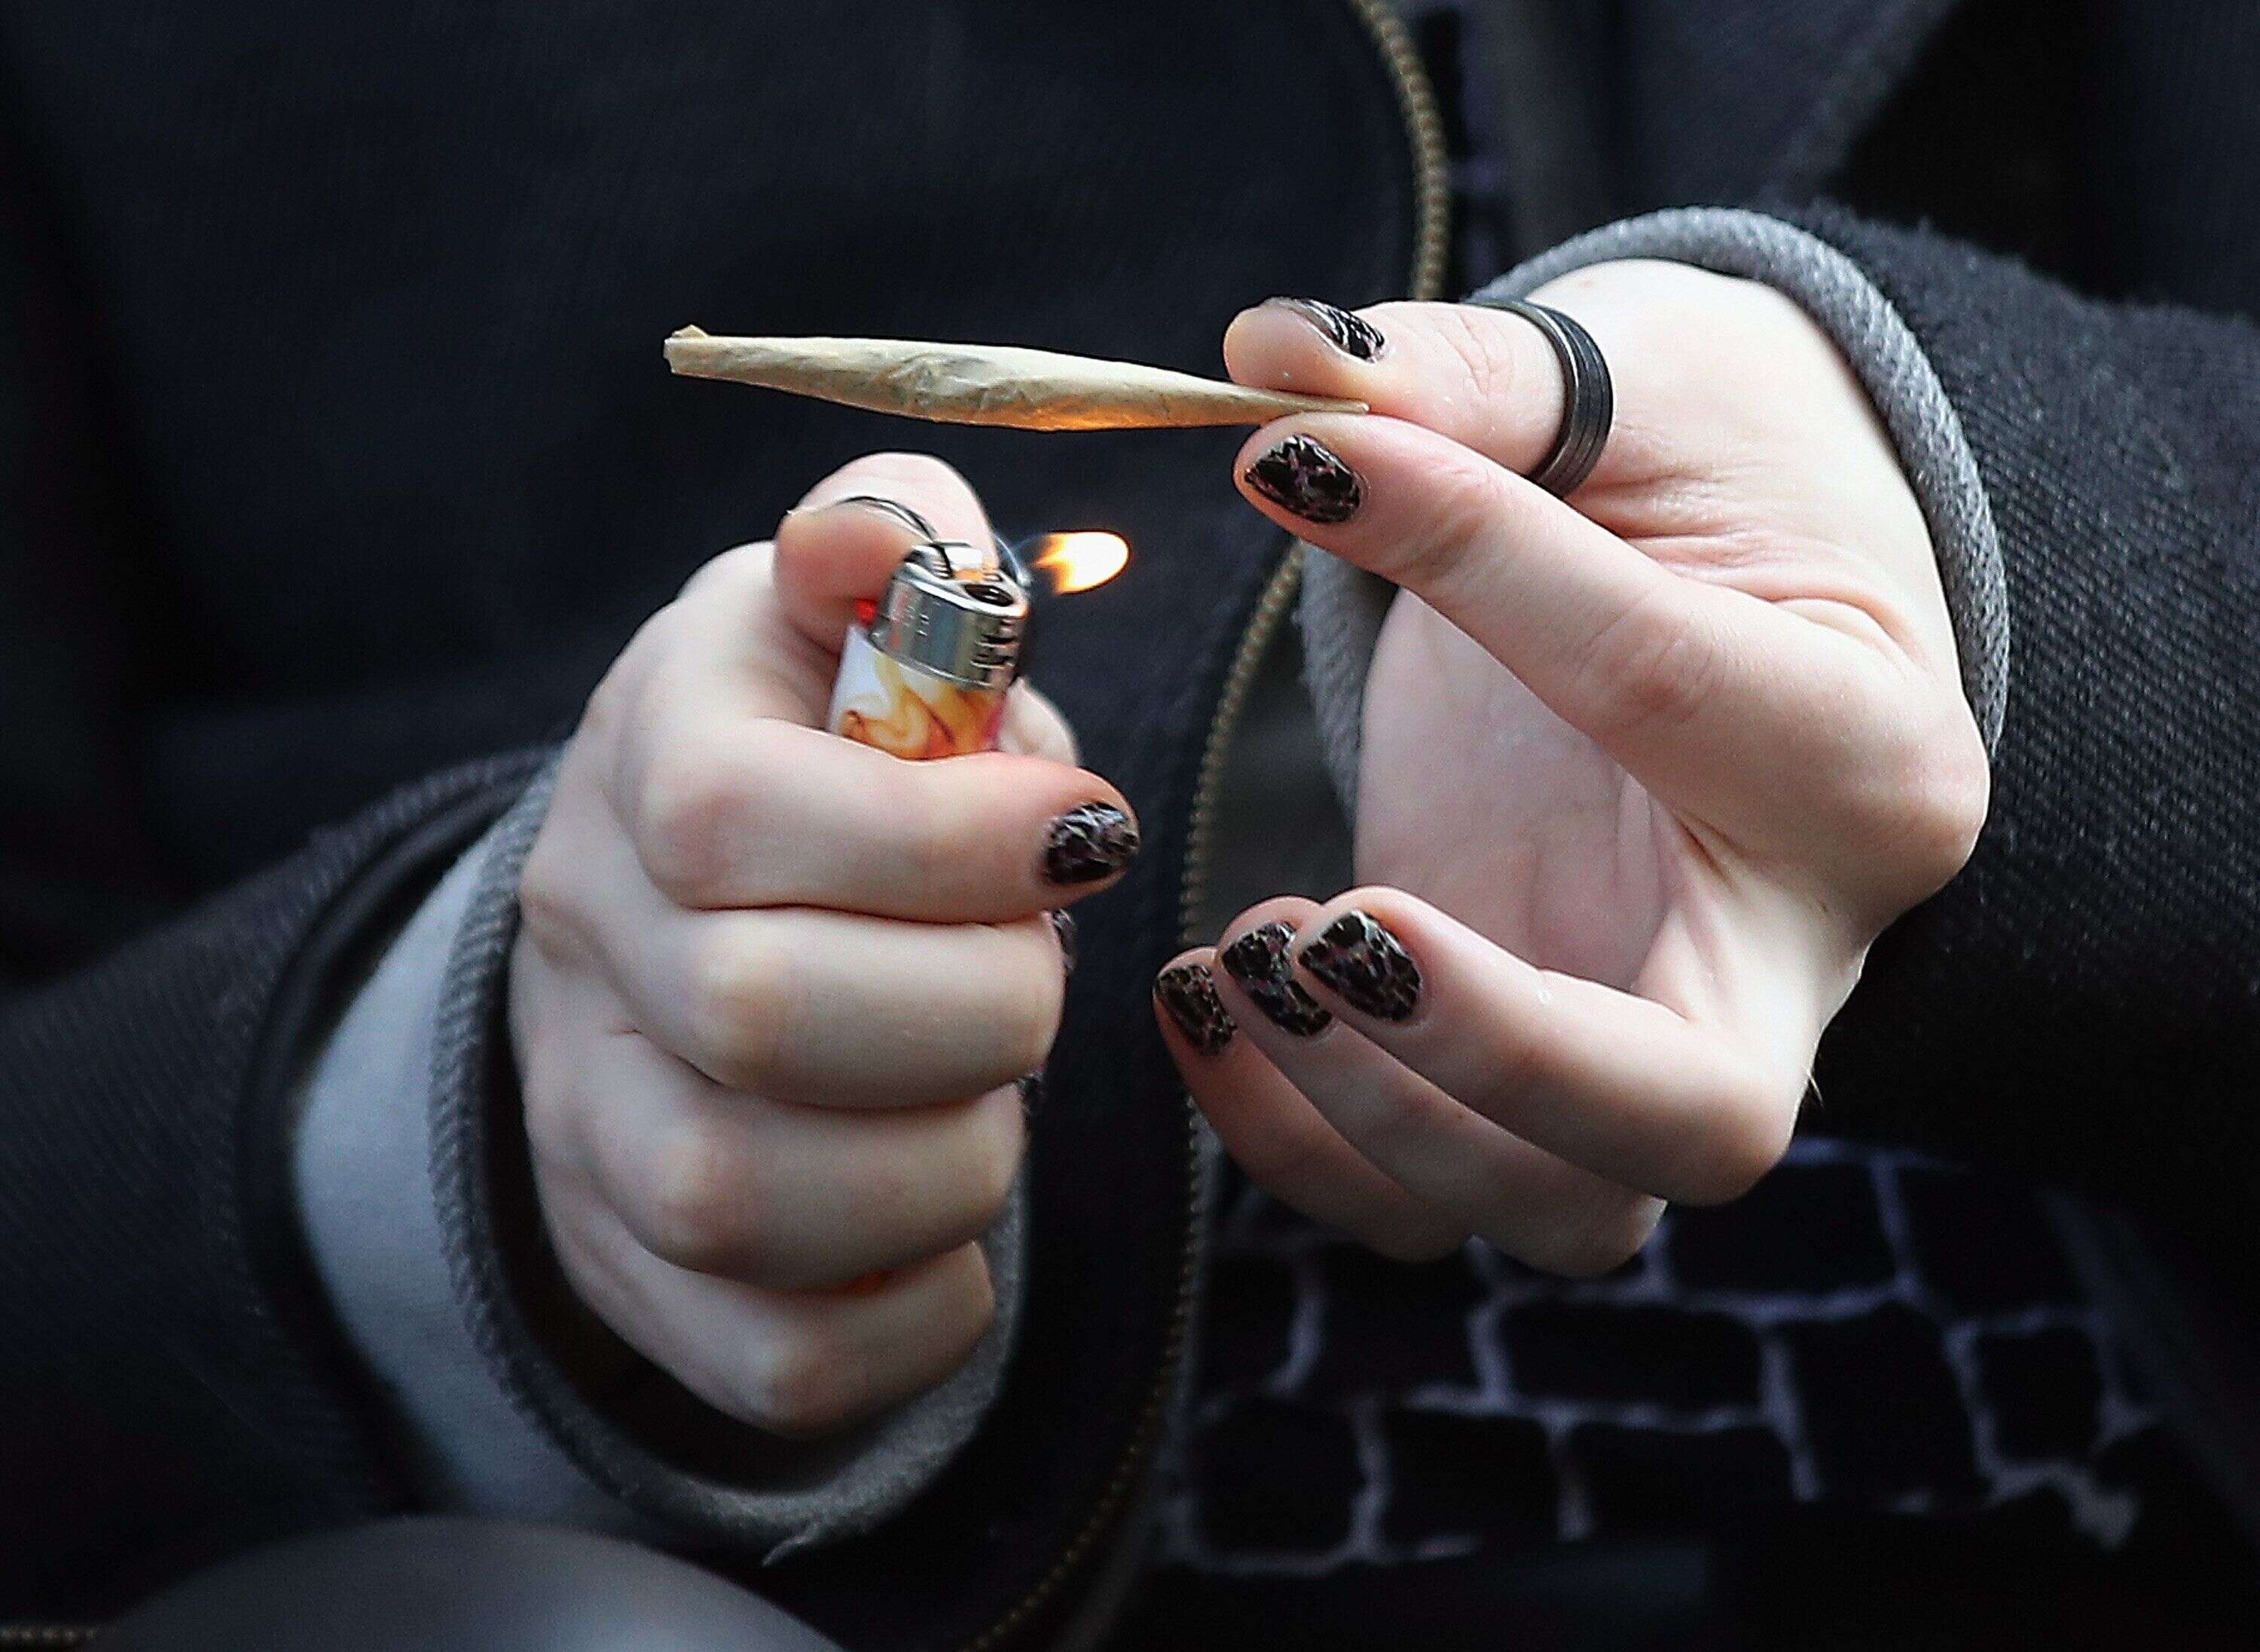 Le maire de Reims Arnaud Robinet a proposé de tester la légalisation du cannabis. Une idée balayée immédiatement par Gérald Darmanin, le ministre de l'Intérieur (photo d'illustration prise le 14 avril dernier aux États-Unis).